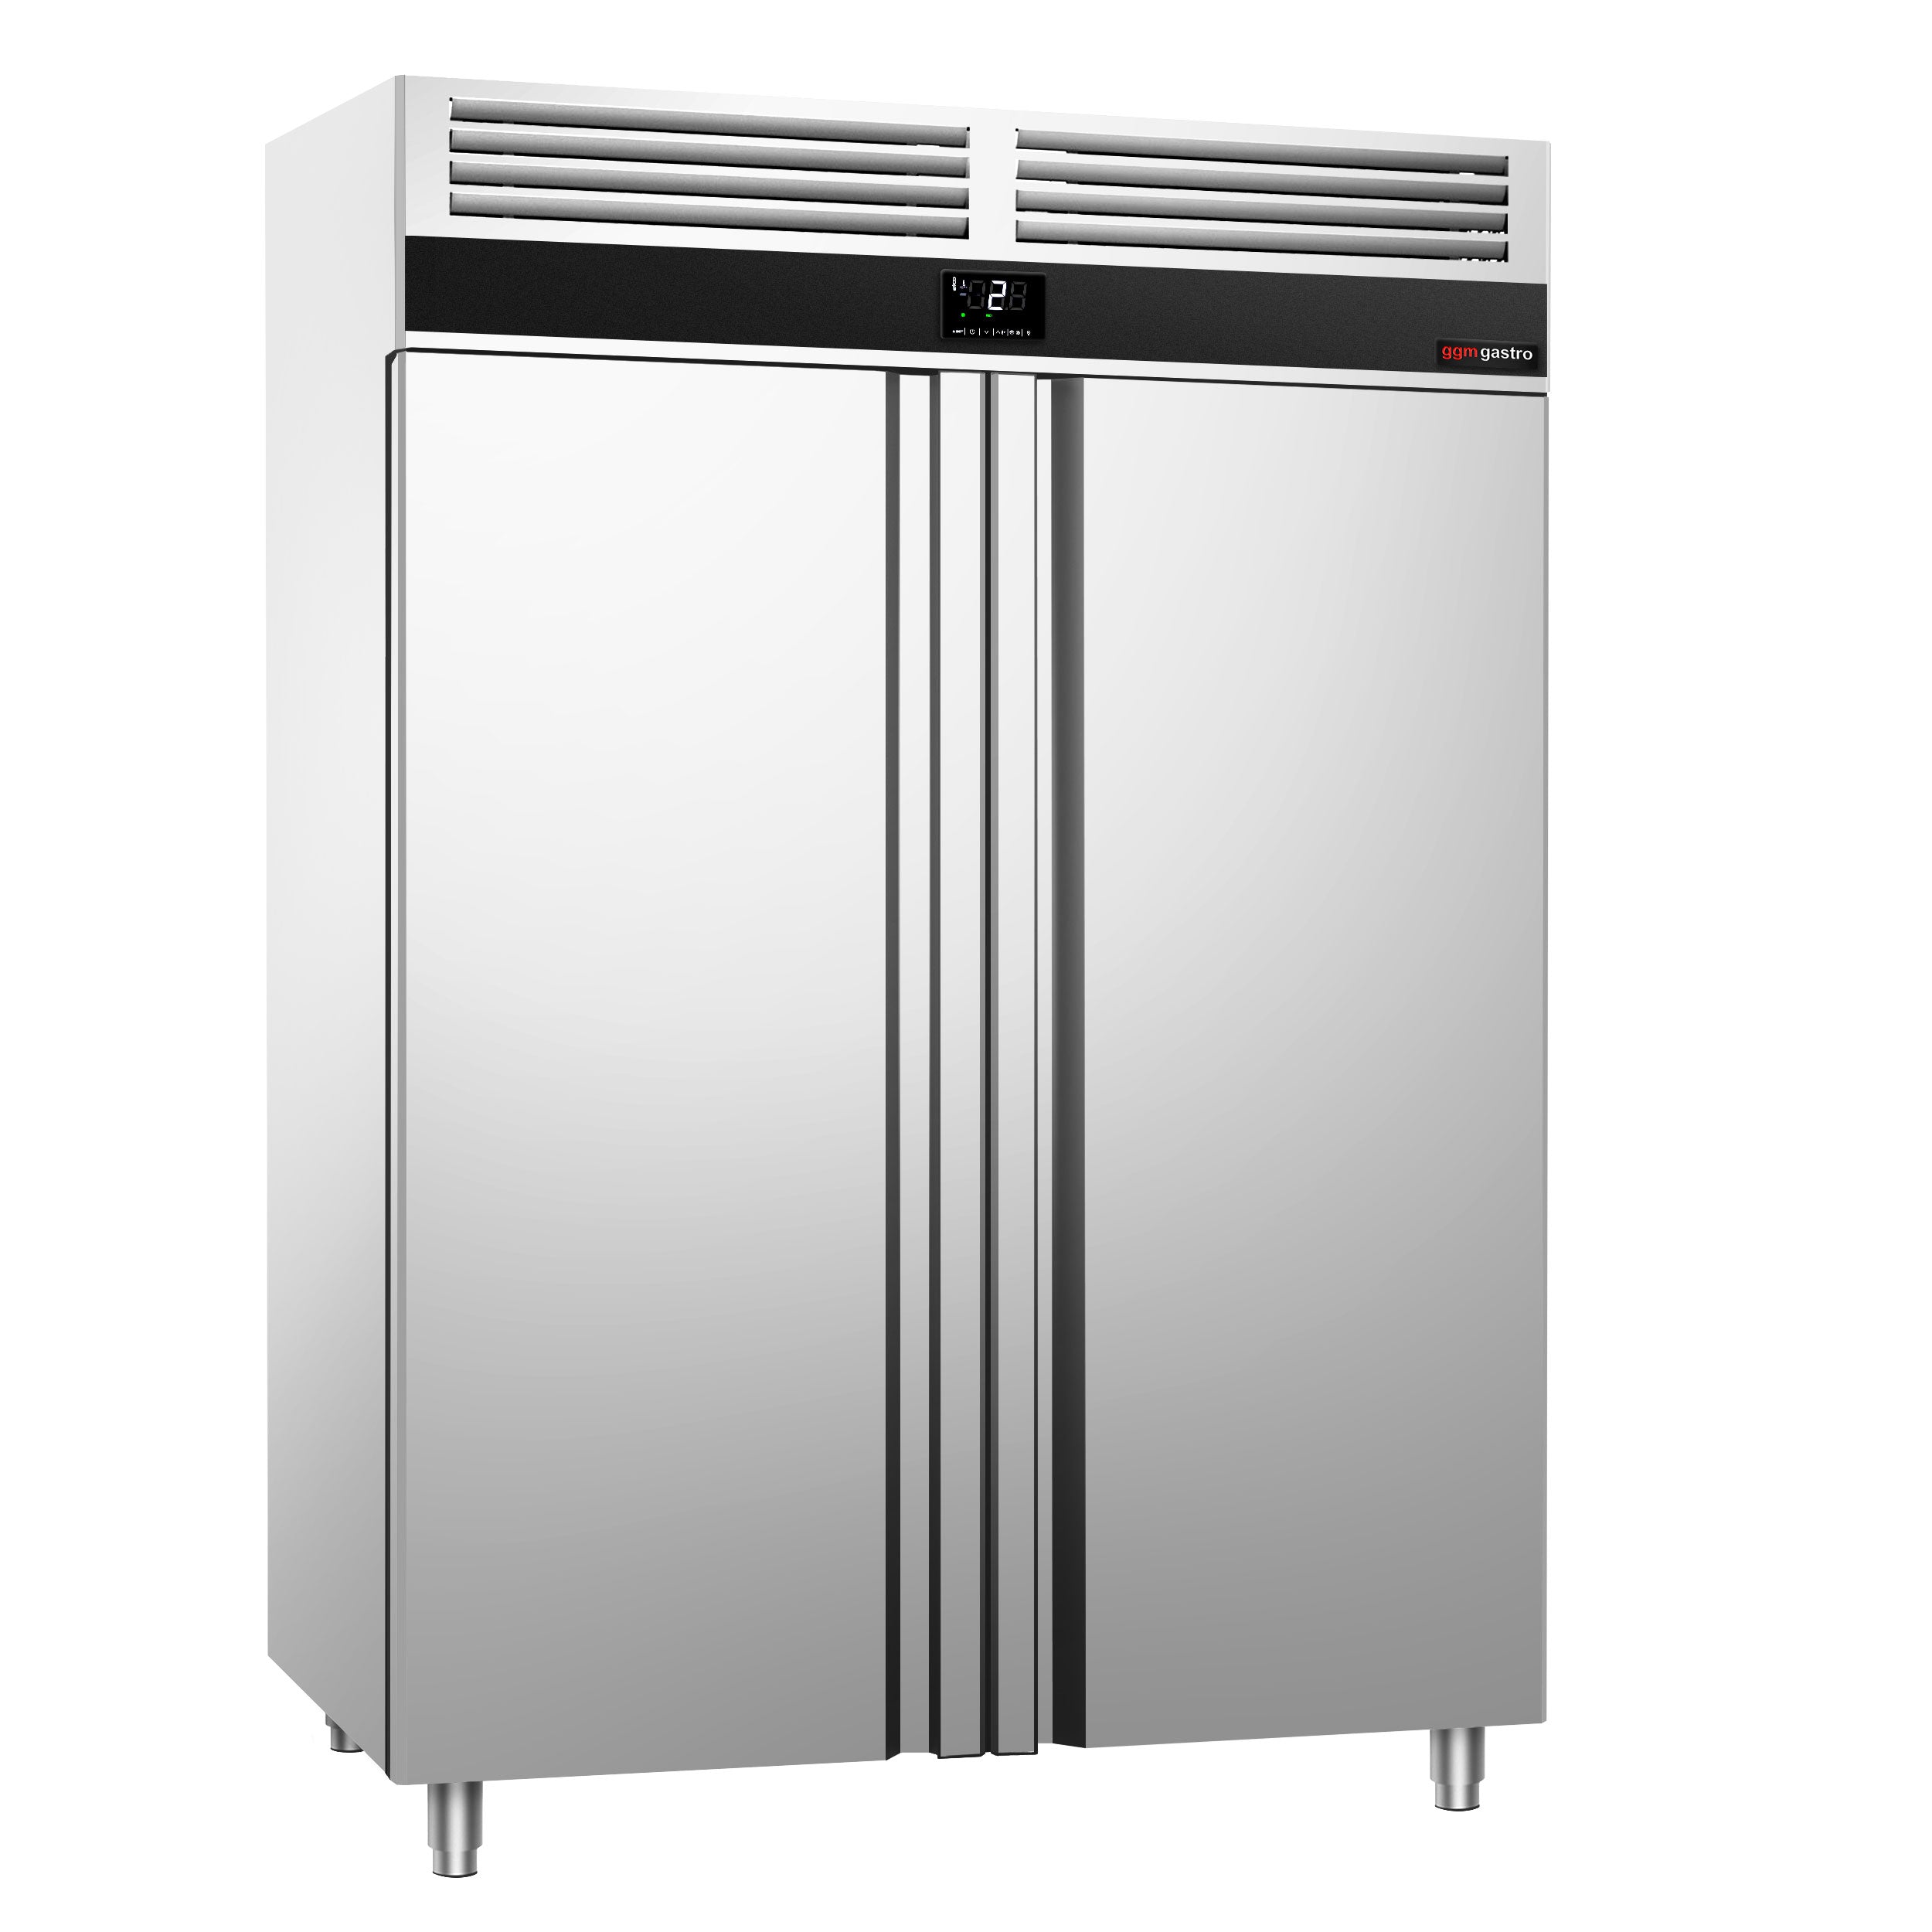 Køleskab - 1,4 x 0,81 m - 1400 liter - med 2 døre